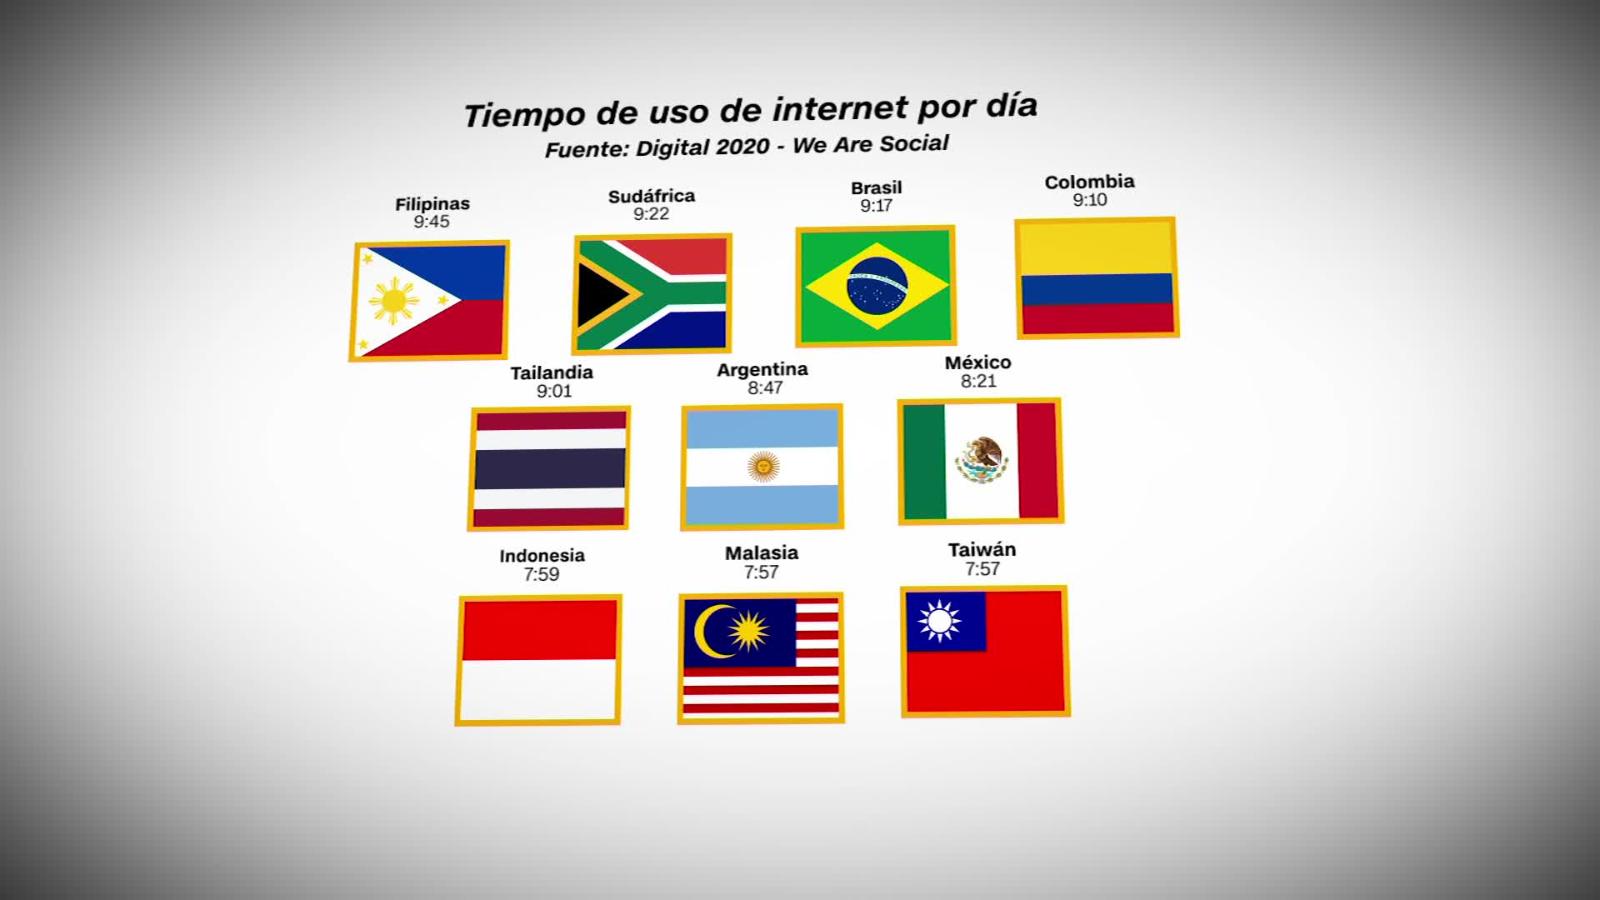 4 Países De América Latina Entre Los 10 Que Más Tiempo Usan Internet